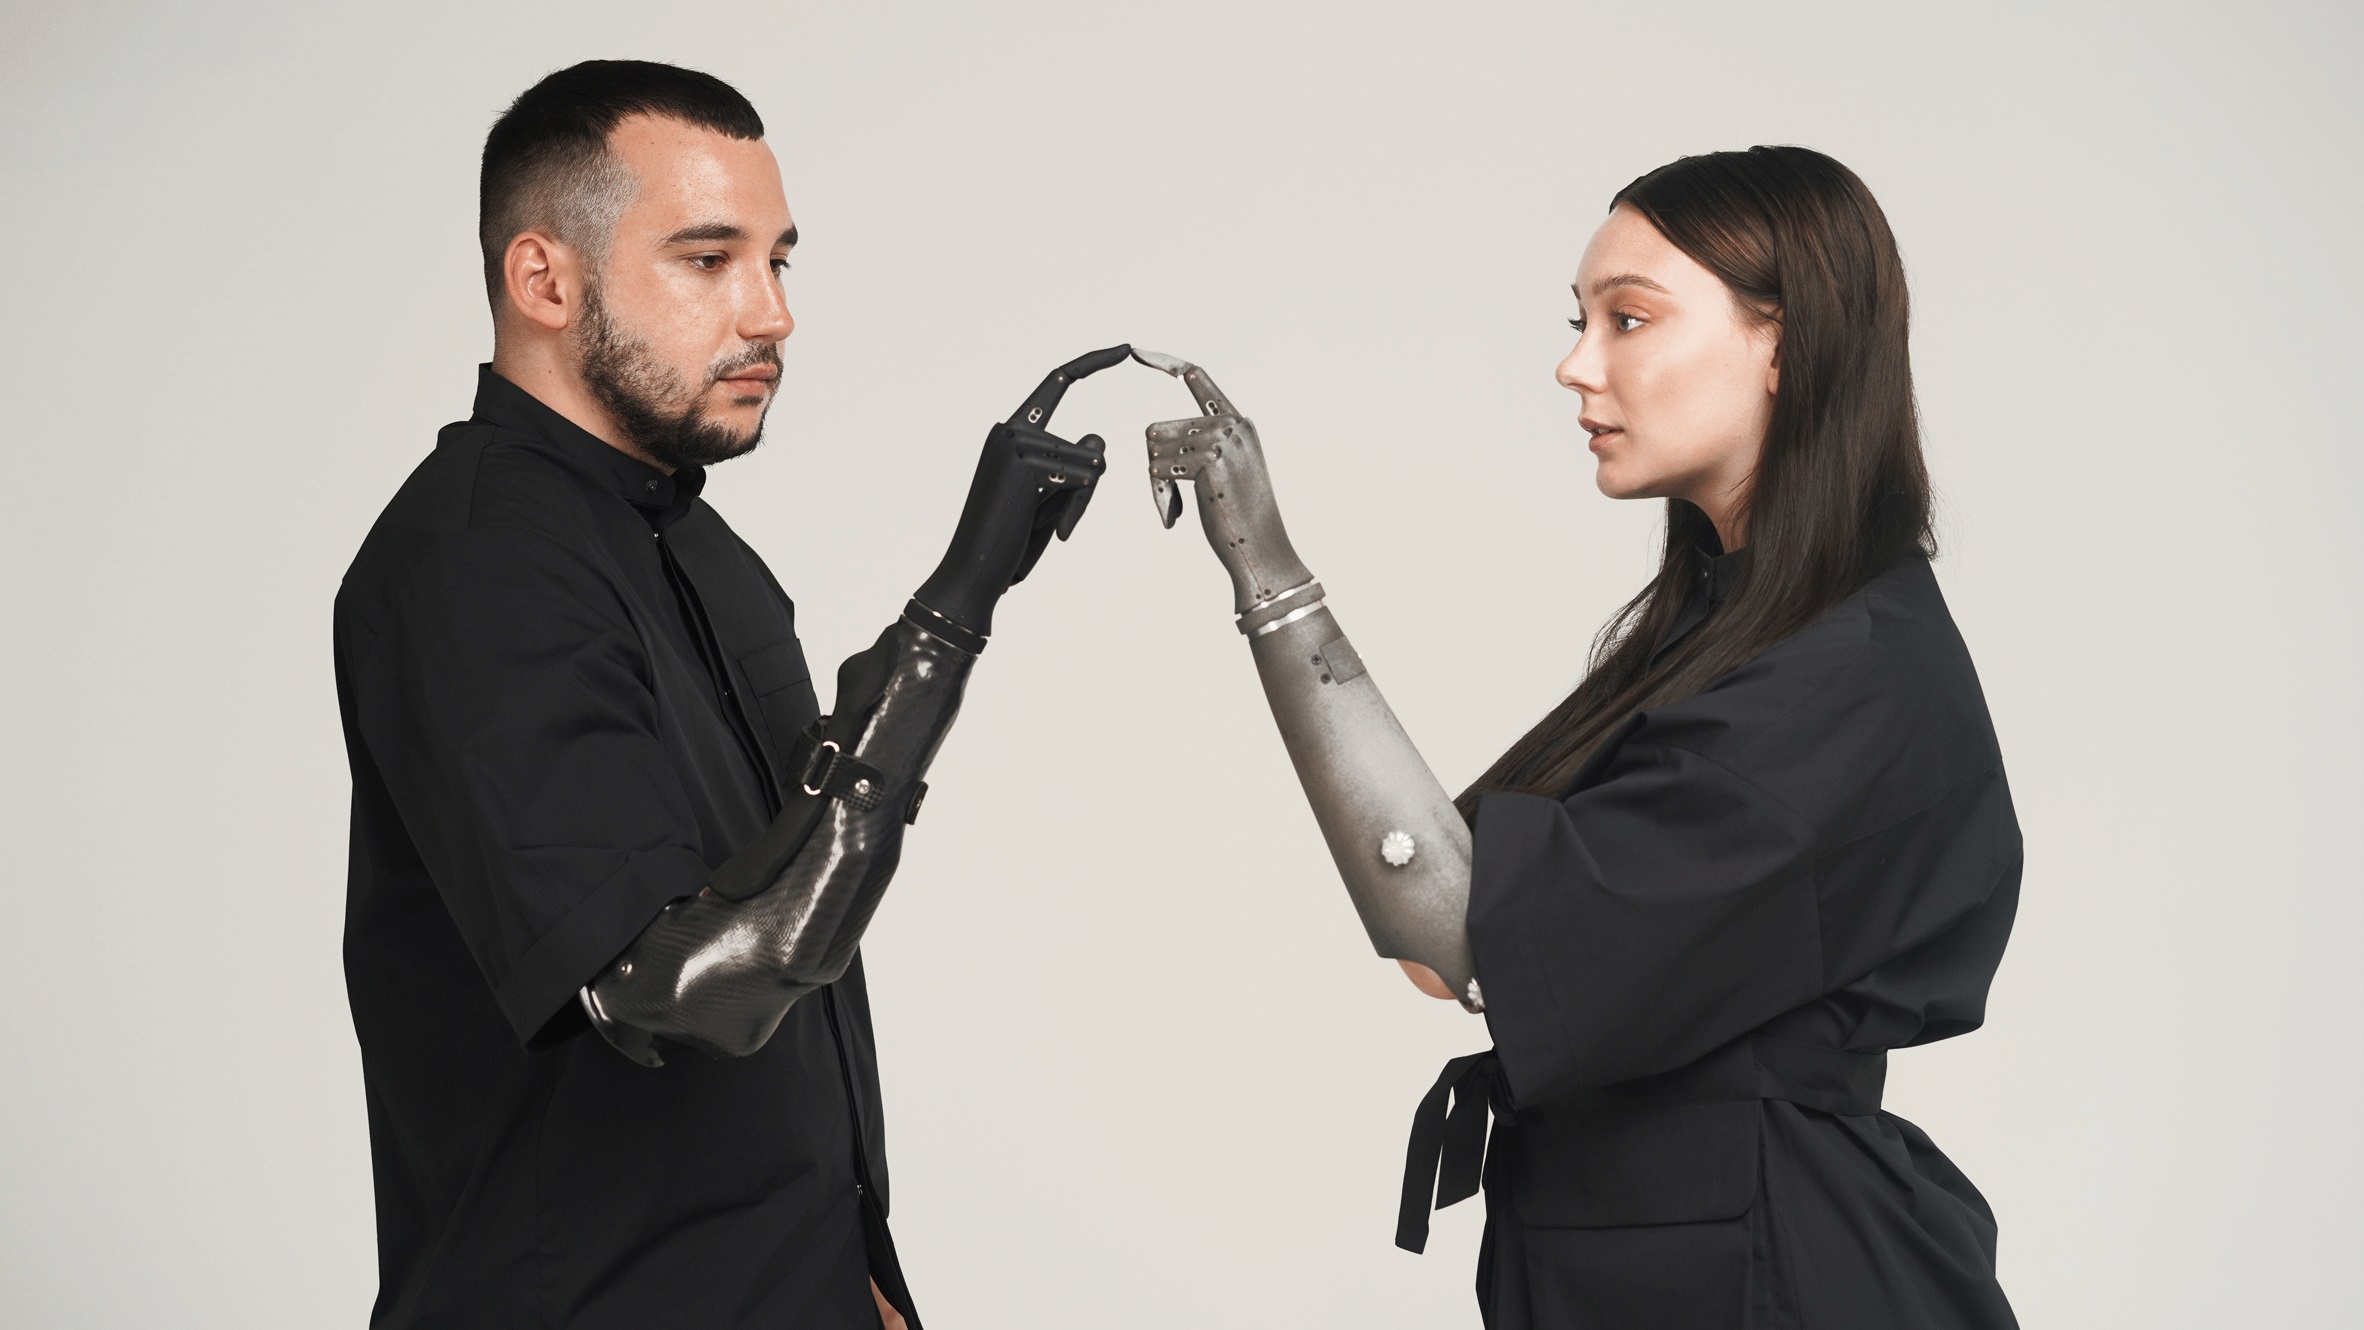 La startup ucraina Esper Hand, braccio robotico protesico, è stata riconosciuta come una delle migliori invenzioni del 2022 ed è finita sulla copertina di Time.